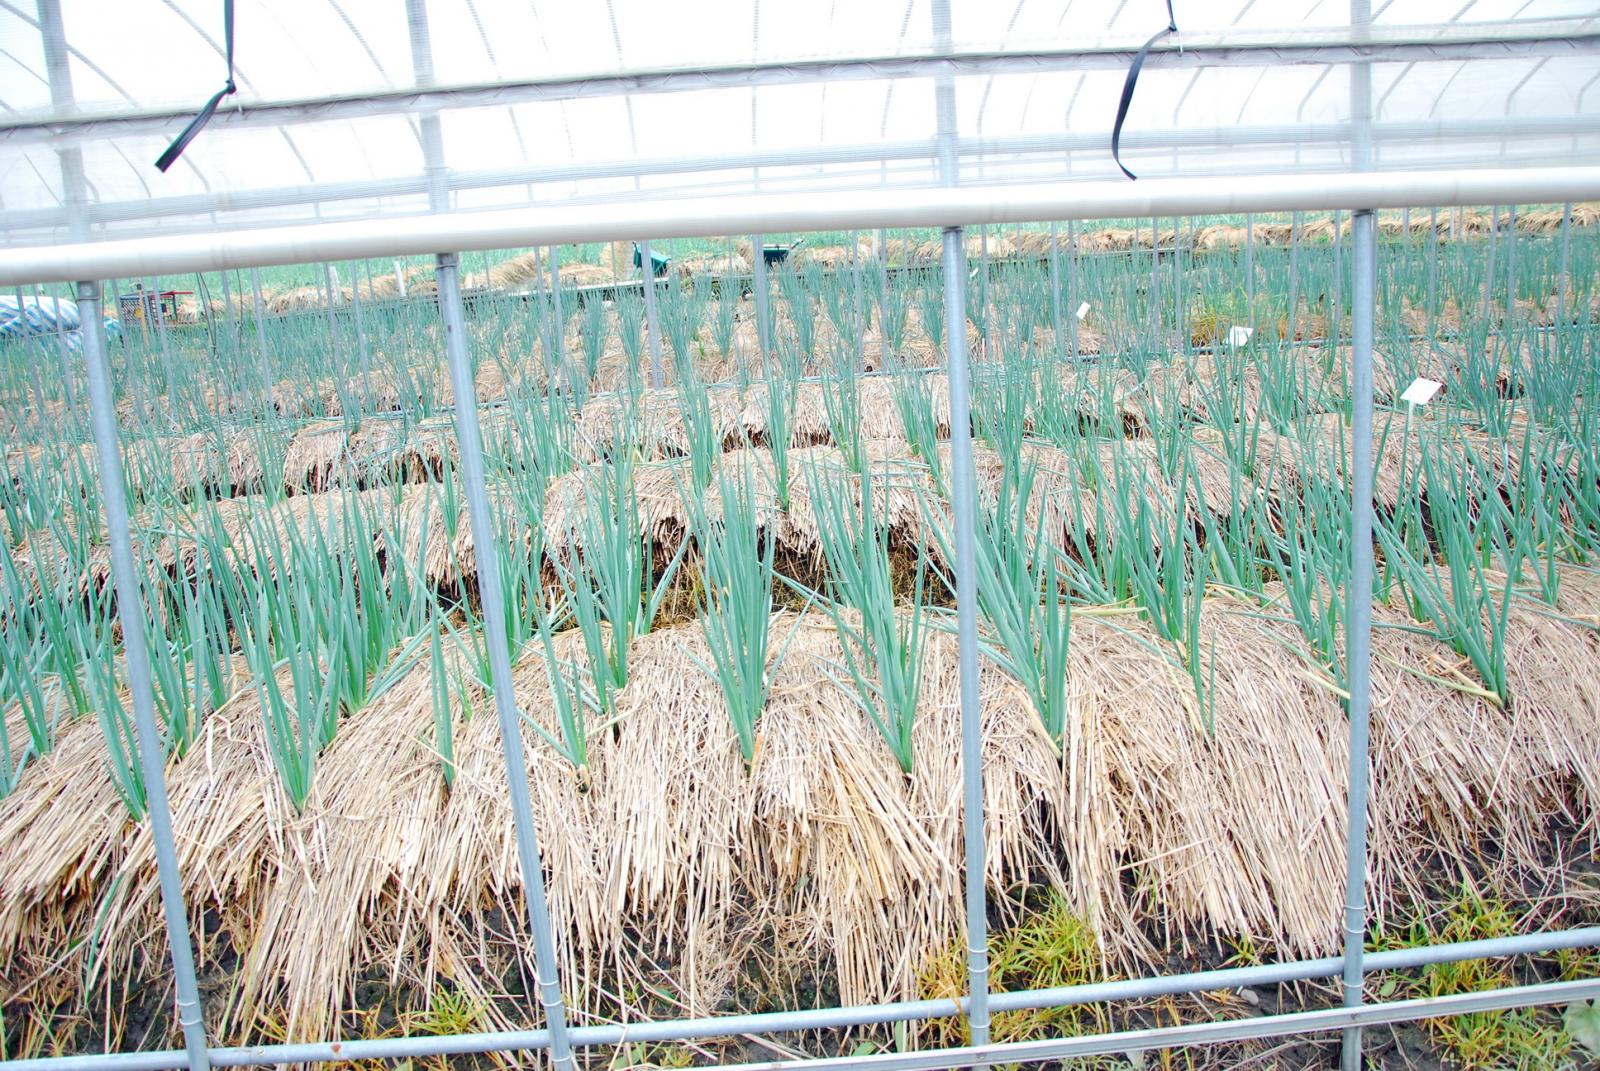 104年蘇迪勒颱風後簡易防颱網室內所植青蔥無災損。